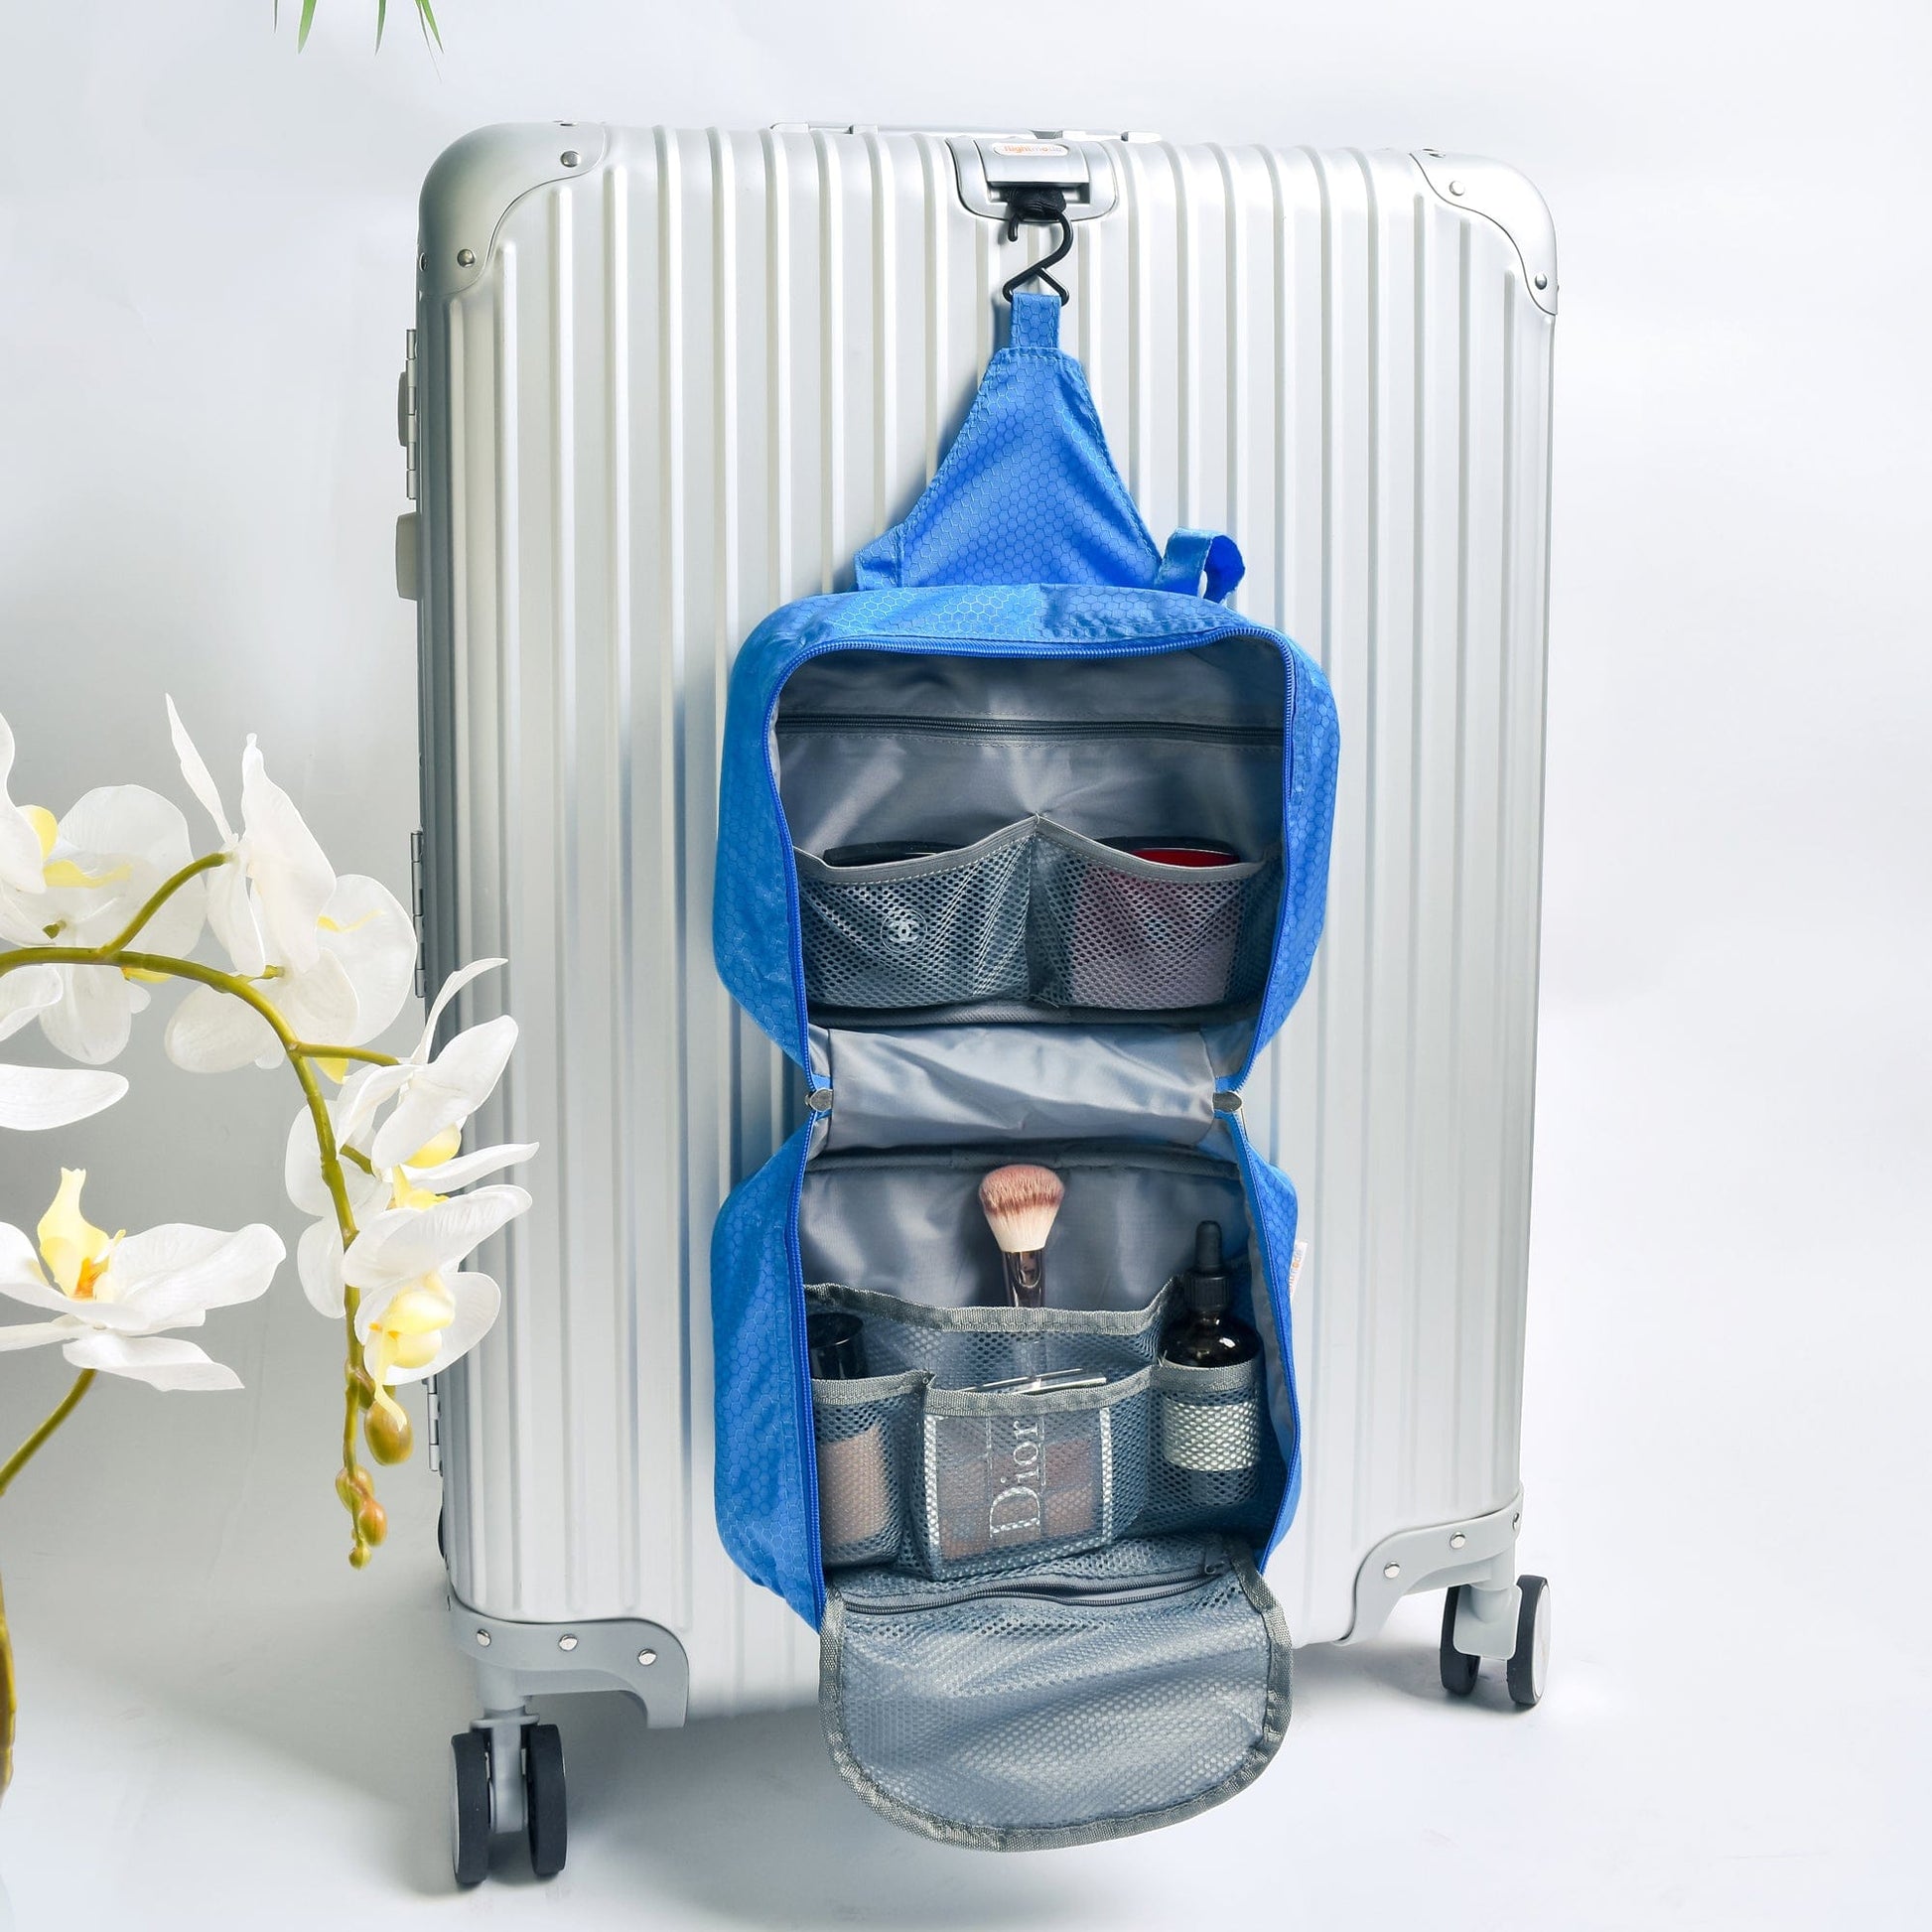 Flightmode toiletry bag Travel Waterproof Hanging Toiletry Bag - Blue